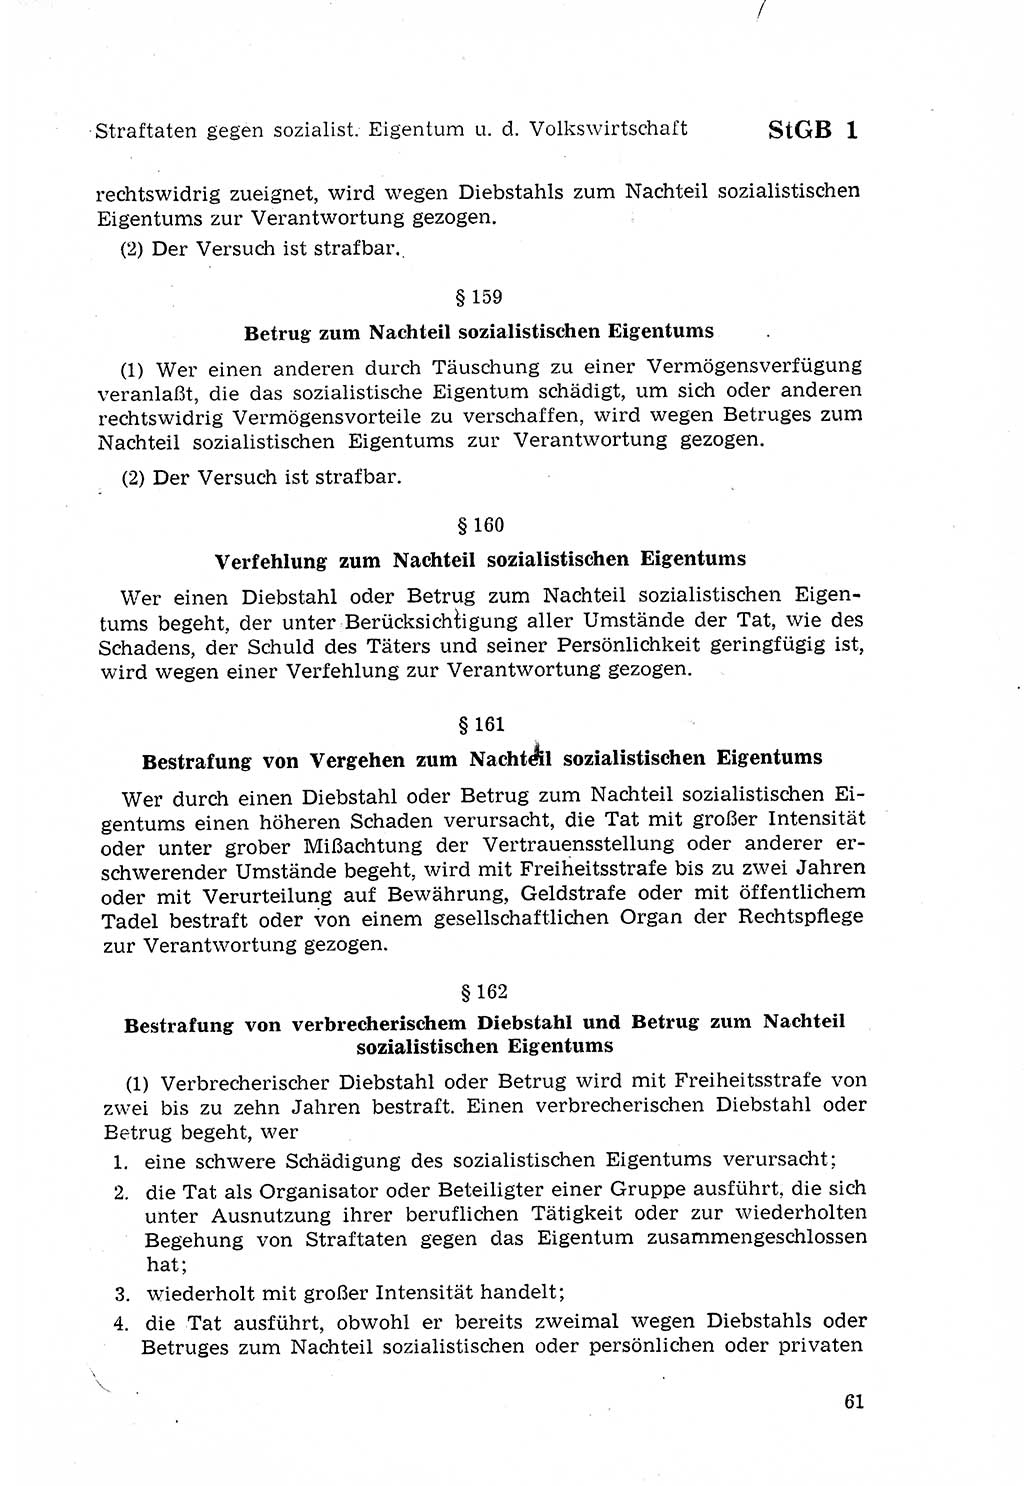 Strafgesetzbuch (StGB) der Deutschen Demokratischen Republik (DDR) 1968, Seite 61 (StGB DDR 1968, S. 61)